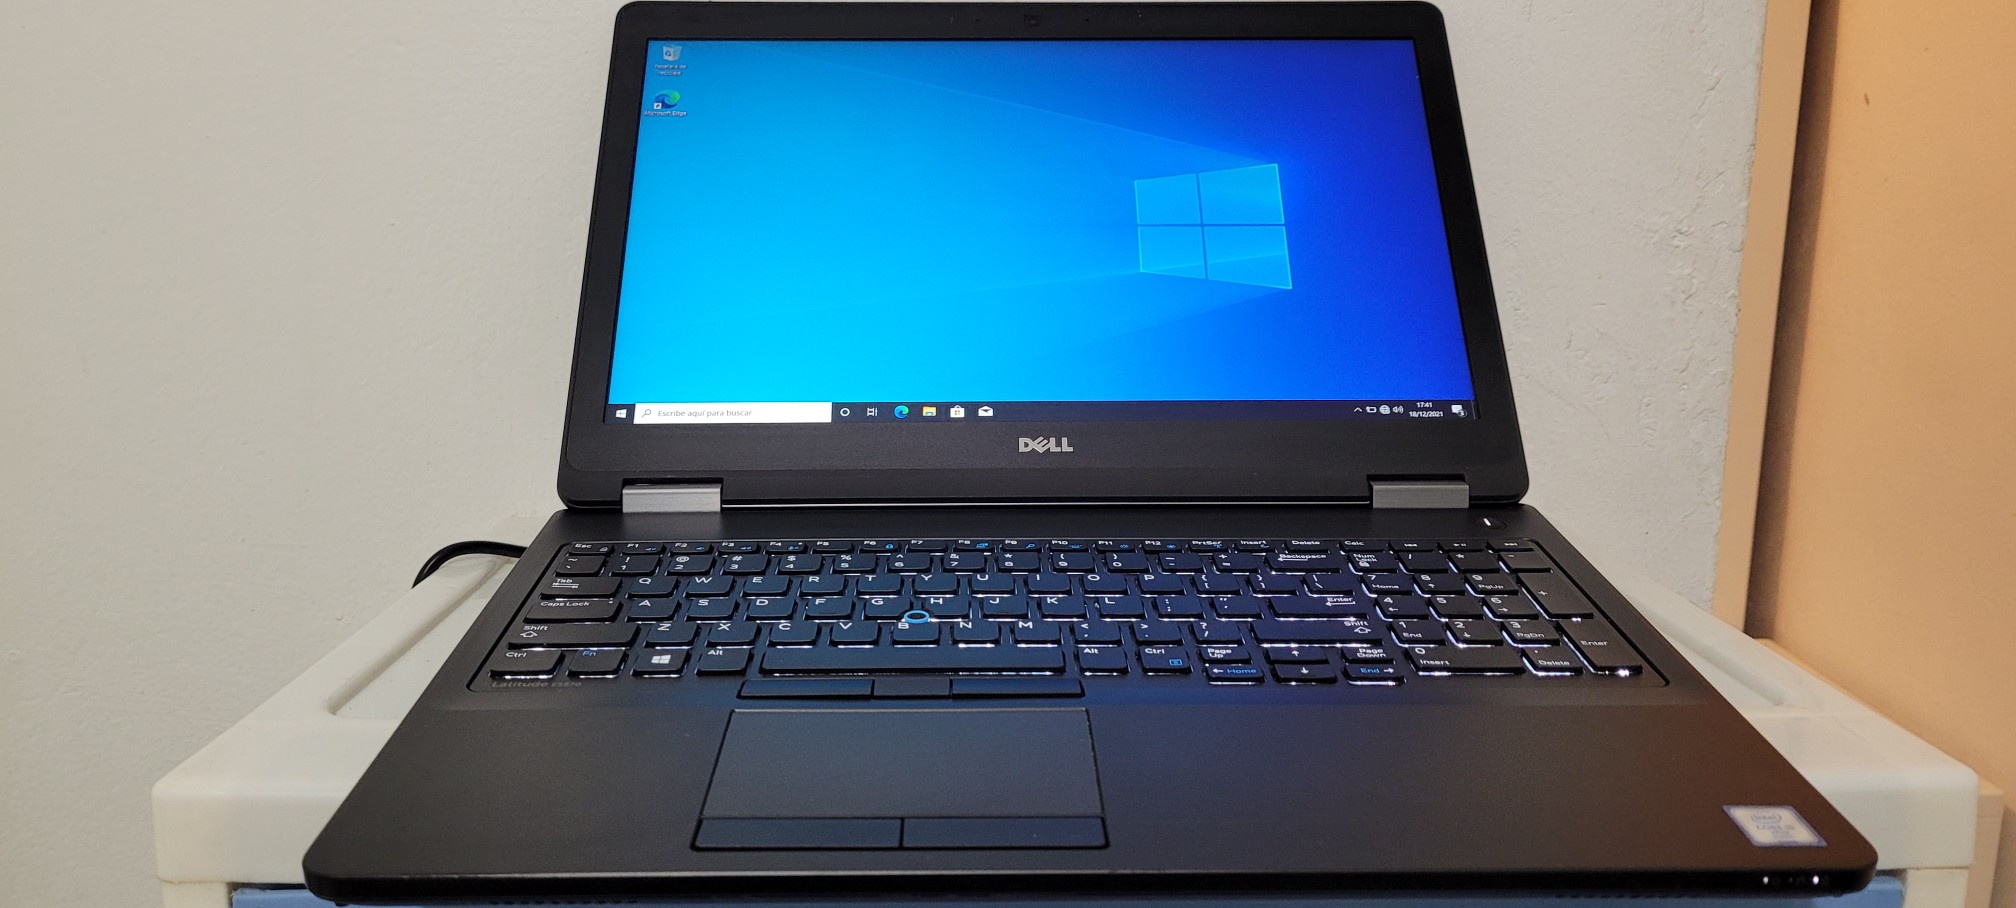 computadoras y laptops - Dell latitude 17 Pulg Core i7 Ram 8gb Disco 1000gb Teclado numerico